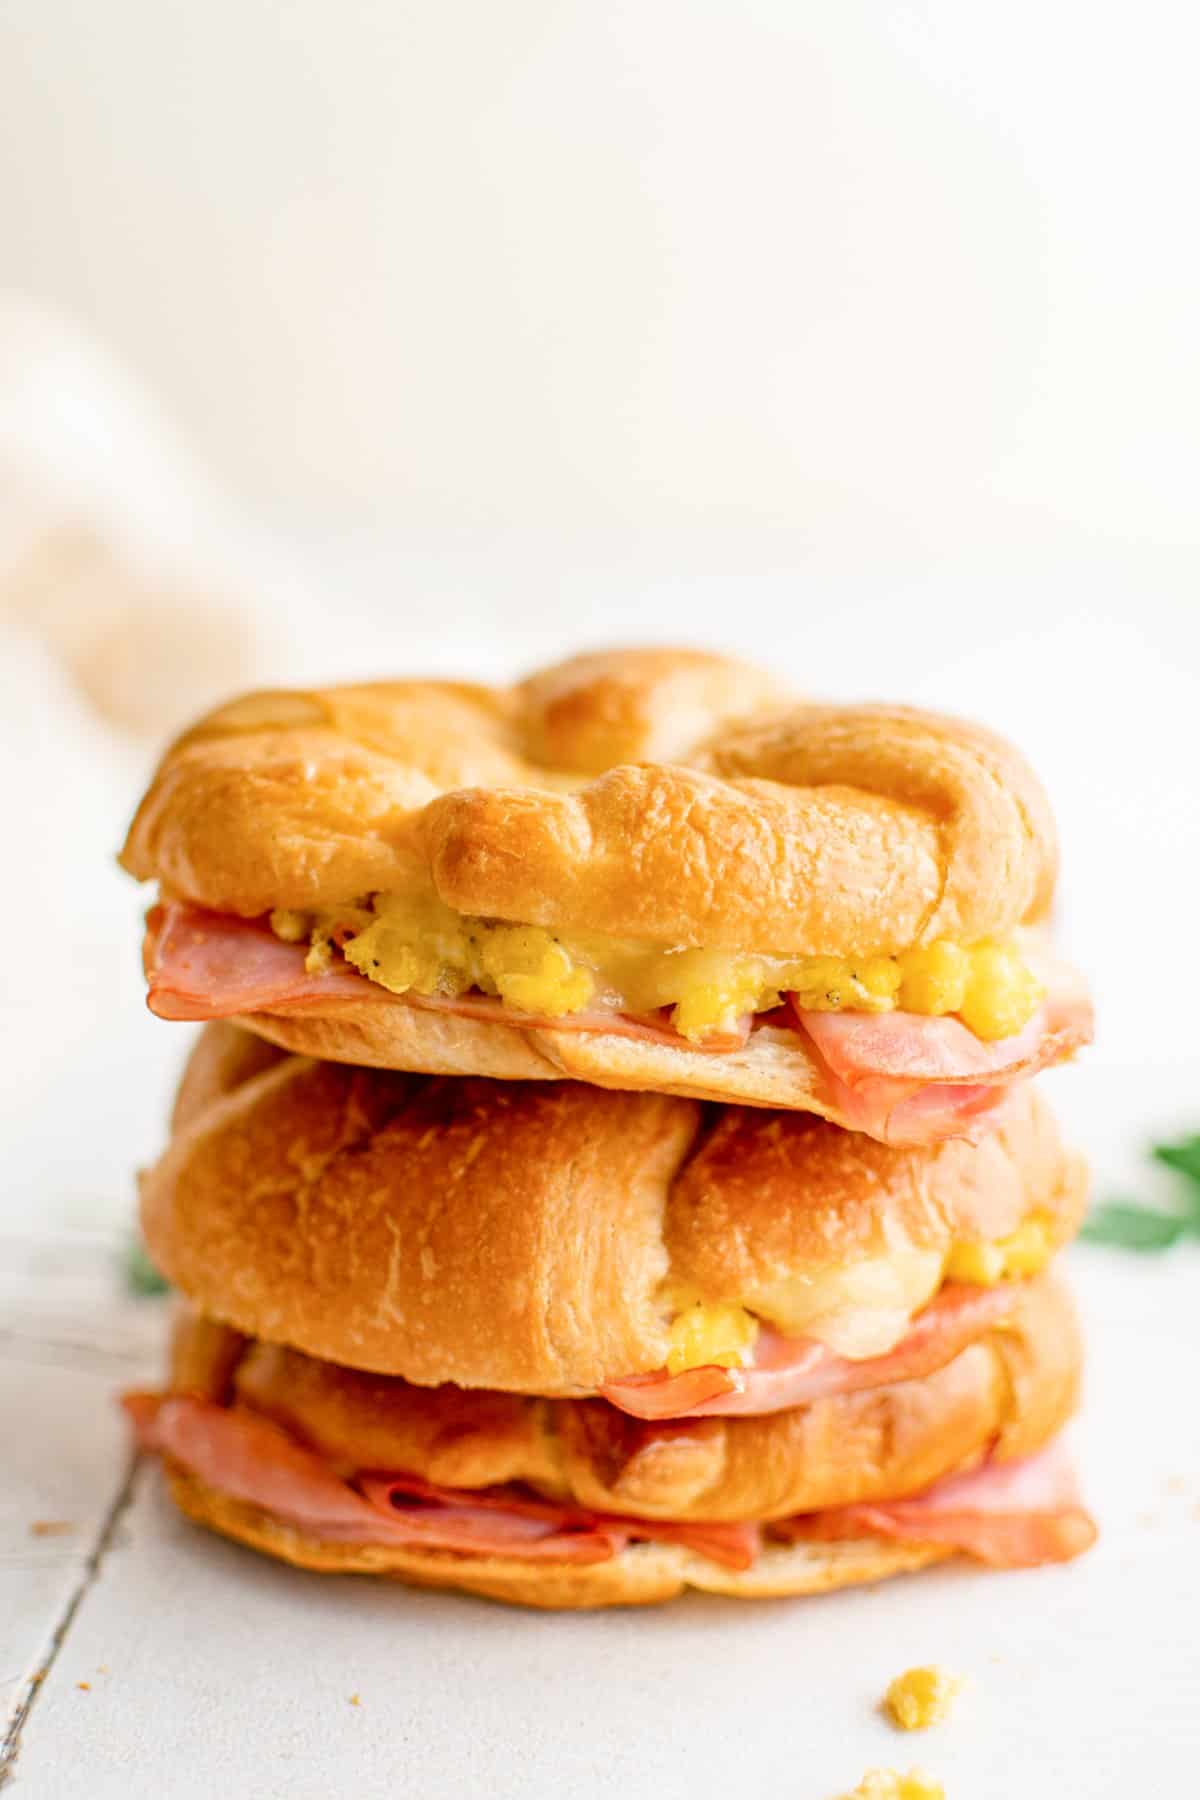 Fried Egg Sandwich - A Seven Minute Breakfast Sandwich